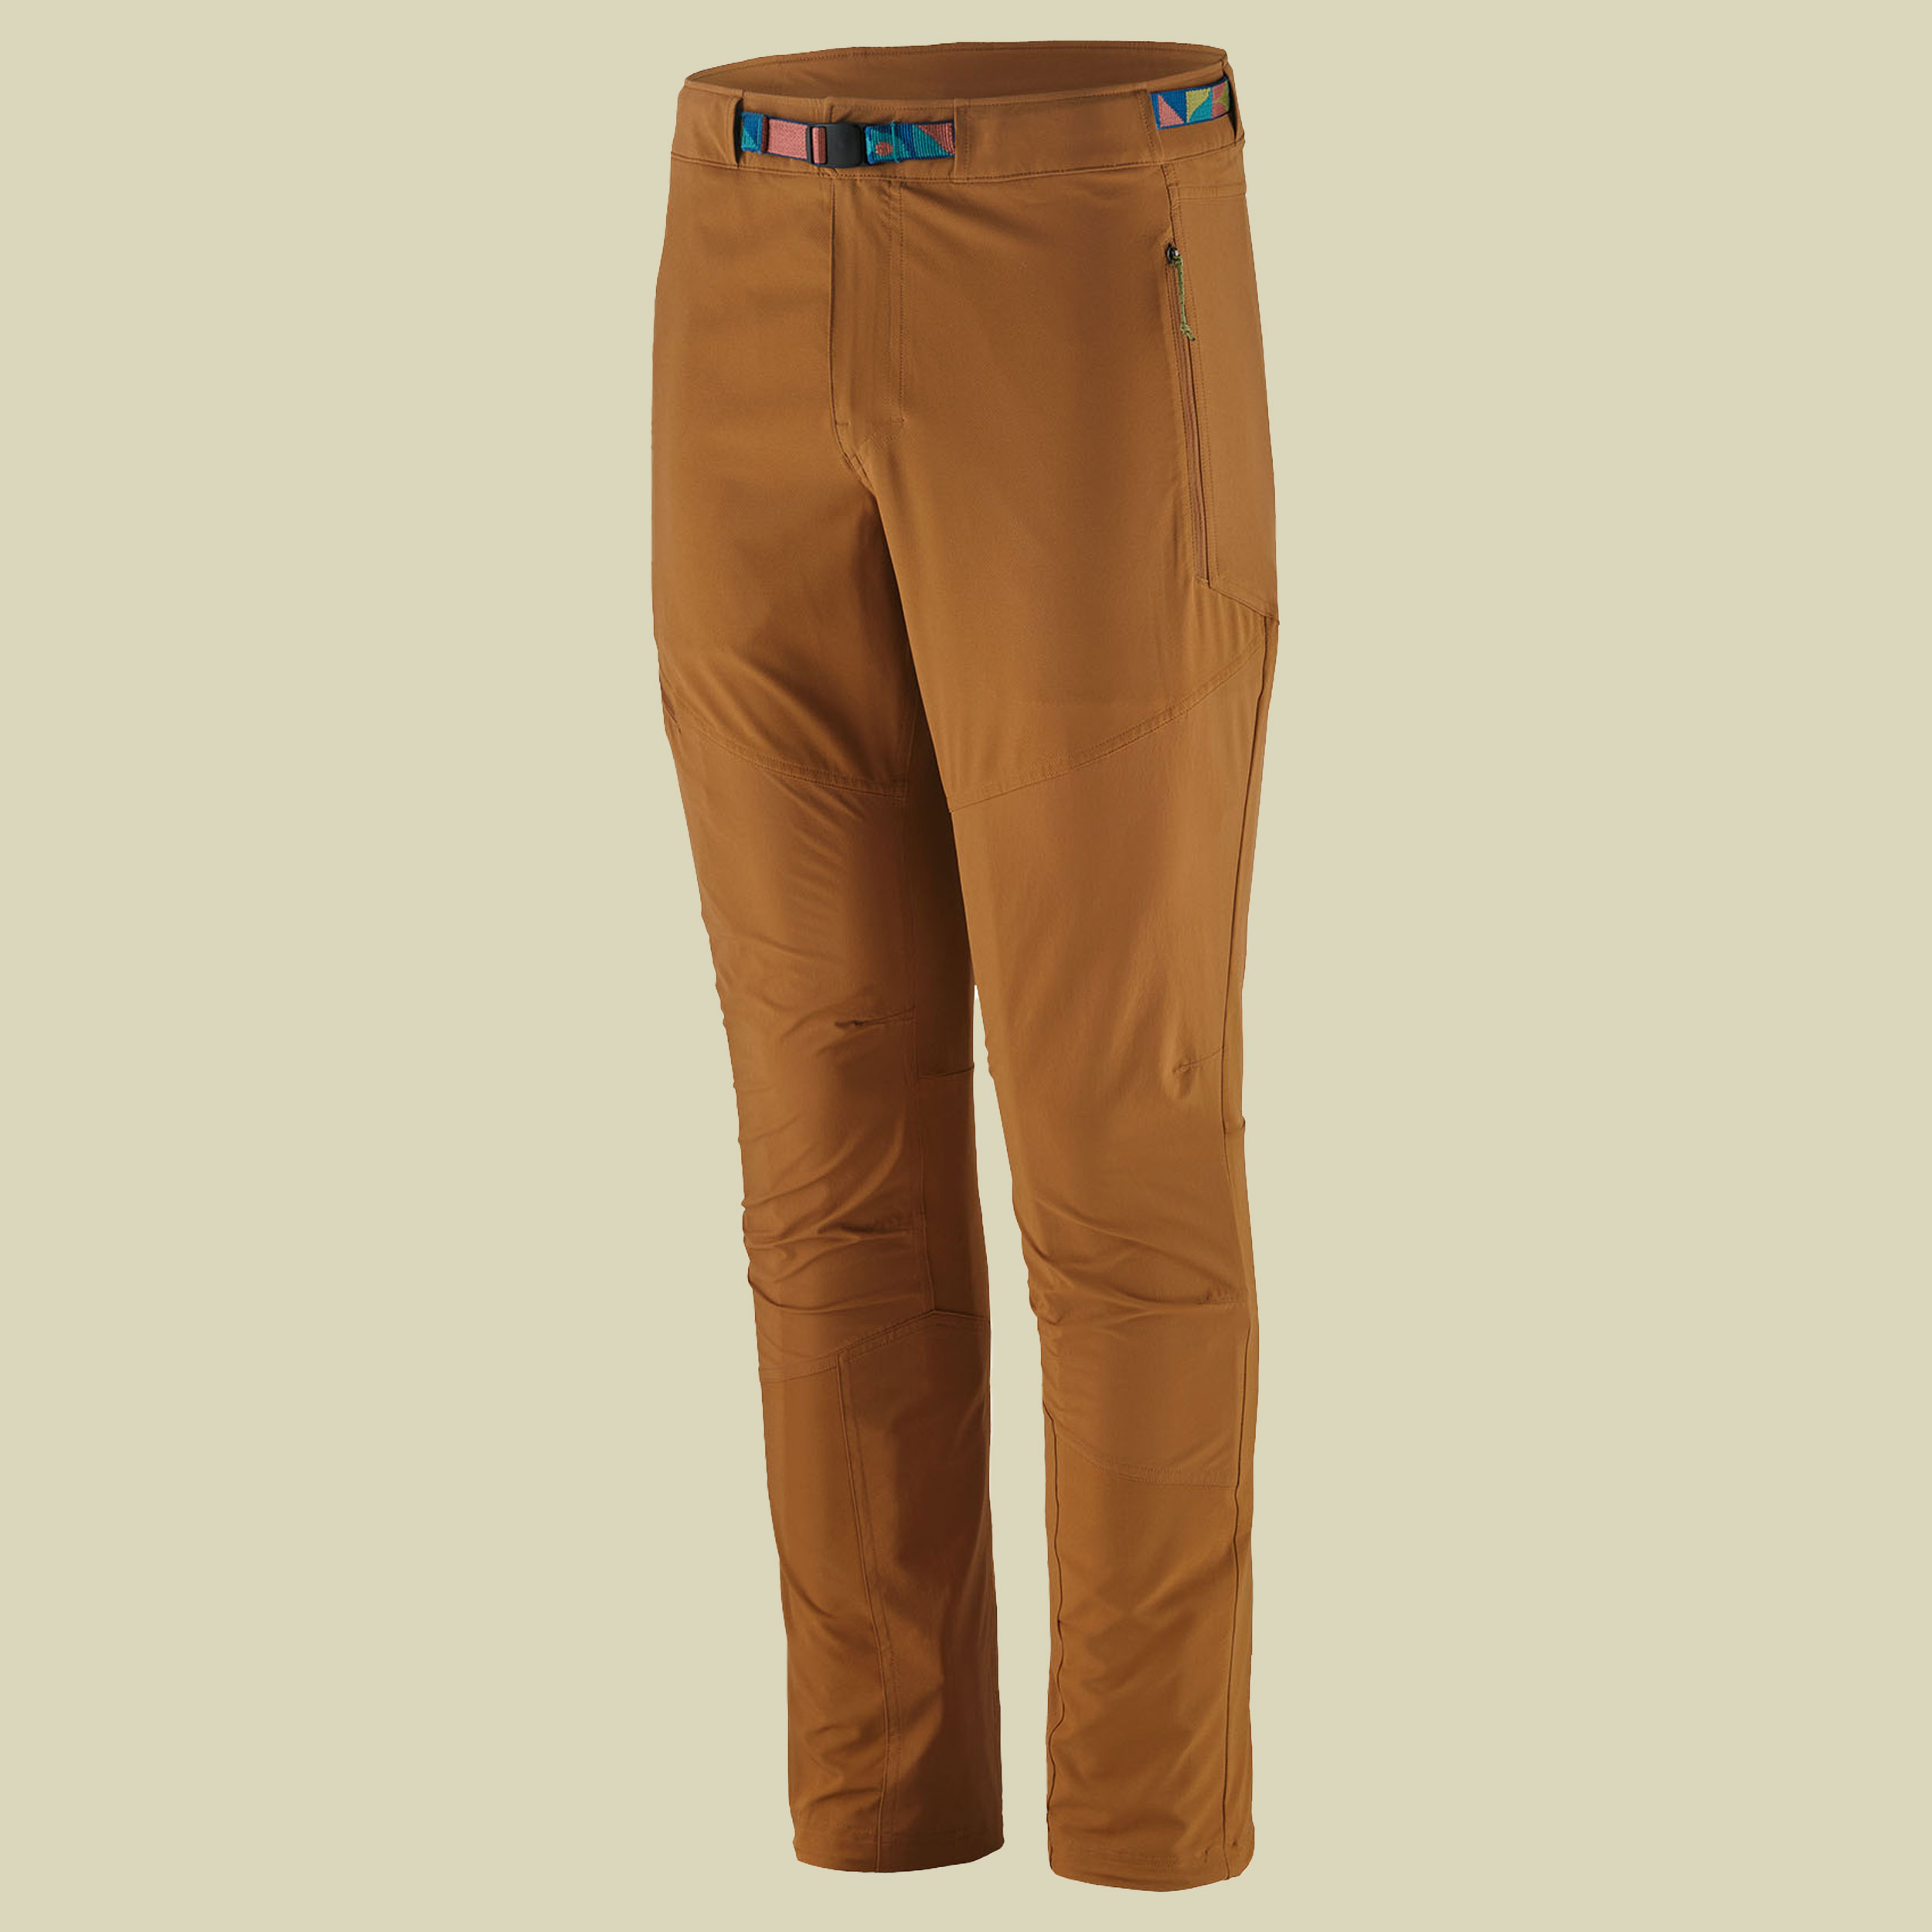 Terravia Alpine Pants Regular Men 30 braun - tree ring brown